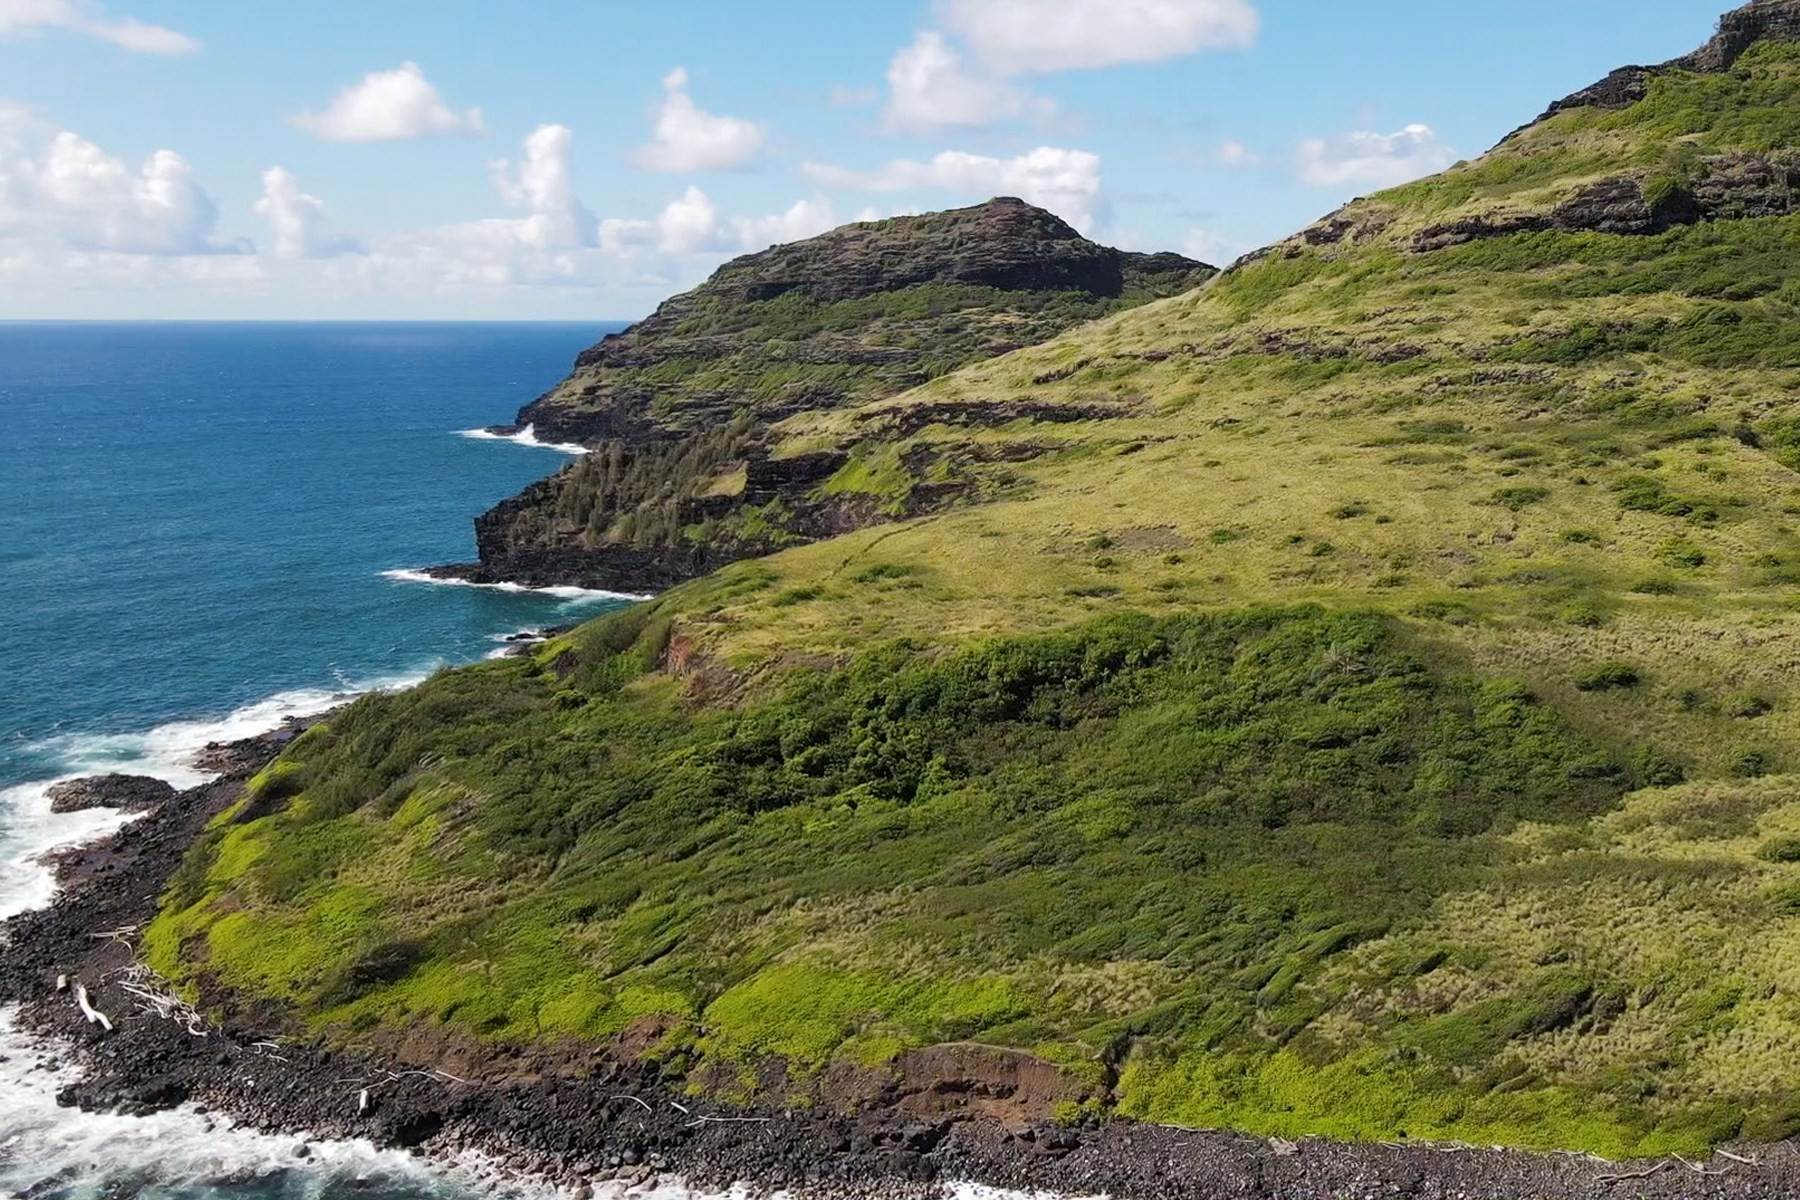 5. Land at Niumalu Lihue, Hawaii 96766 United States